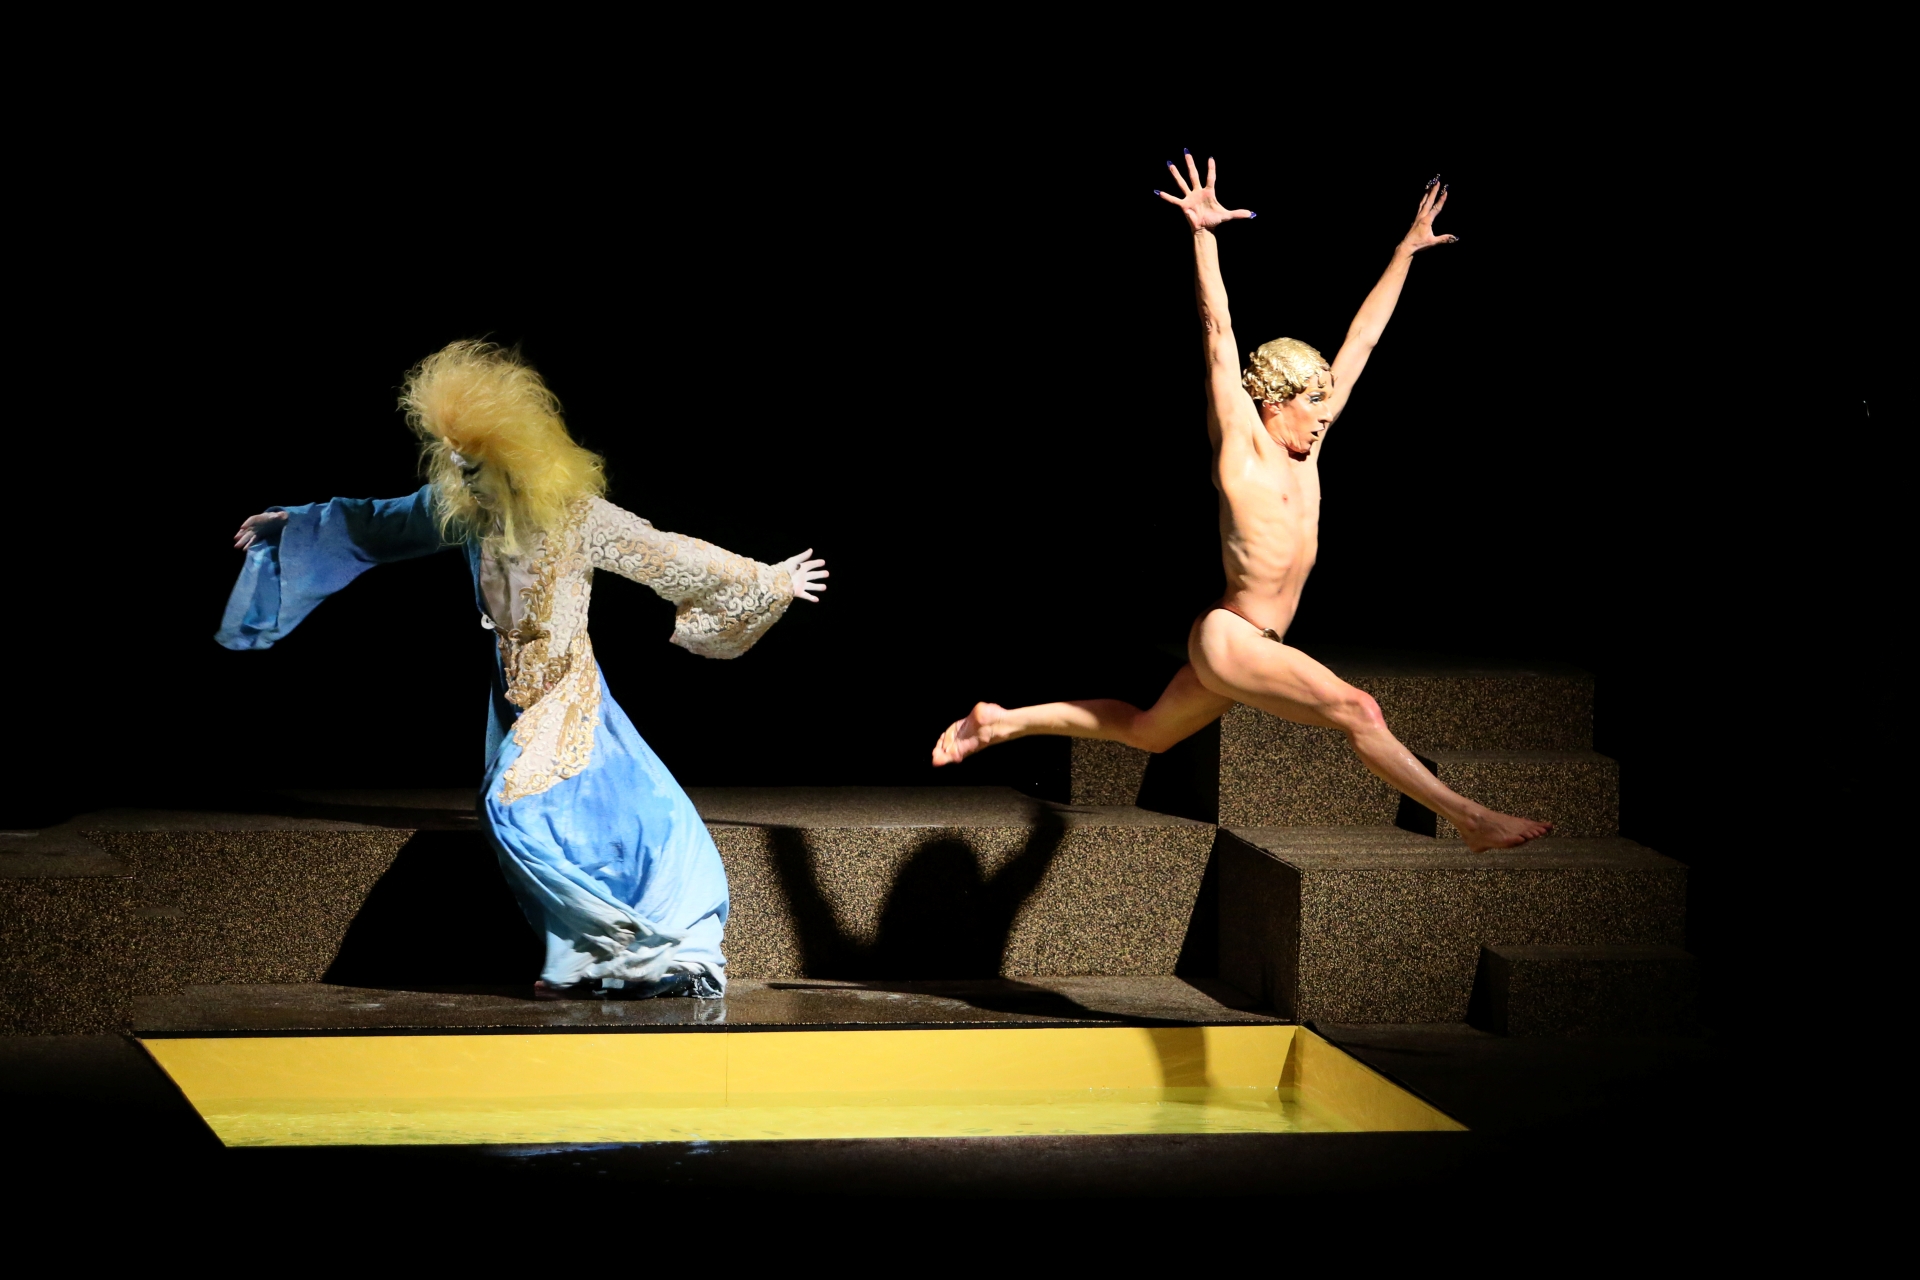 日本舞踏團大駱駝艦舞踏團麿赤兒（Akaji Maro）與法國當代編舞家馮莎・夏紐（François Chaignaud）將於8/17、18日攜手演出《黃金雨》圖/北藝中心提供， 攝影：川島浩之Hiroyuki Kawashima